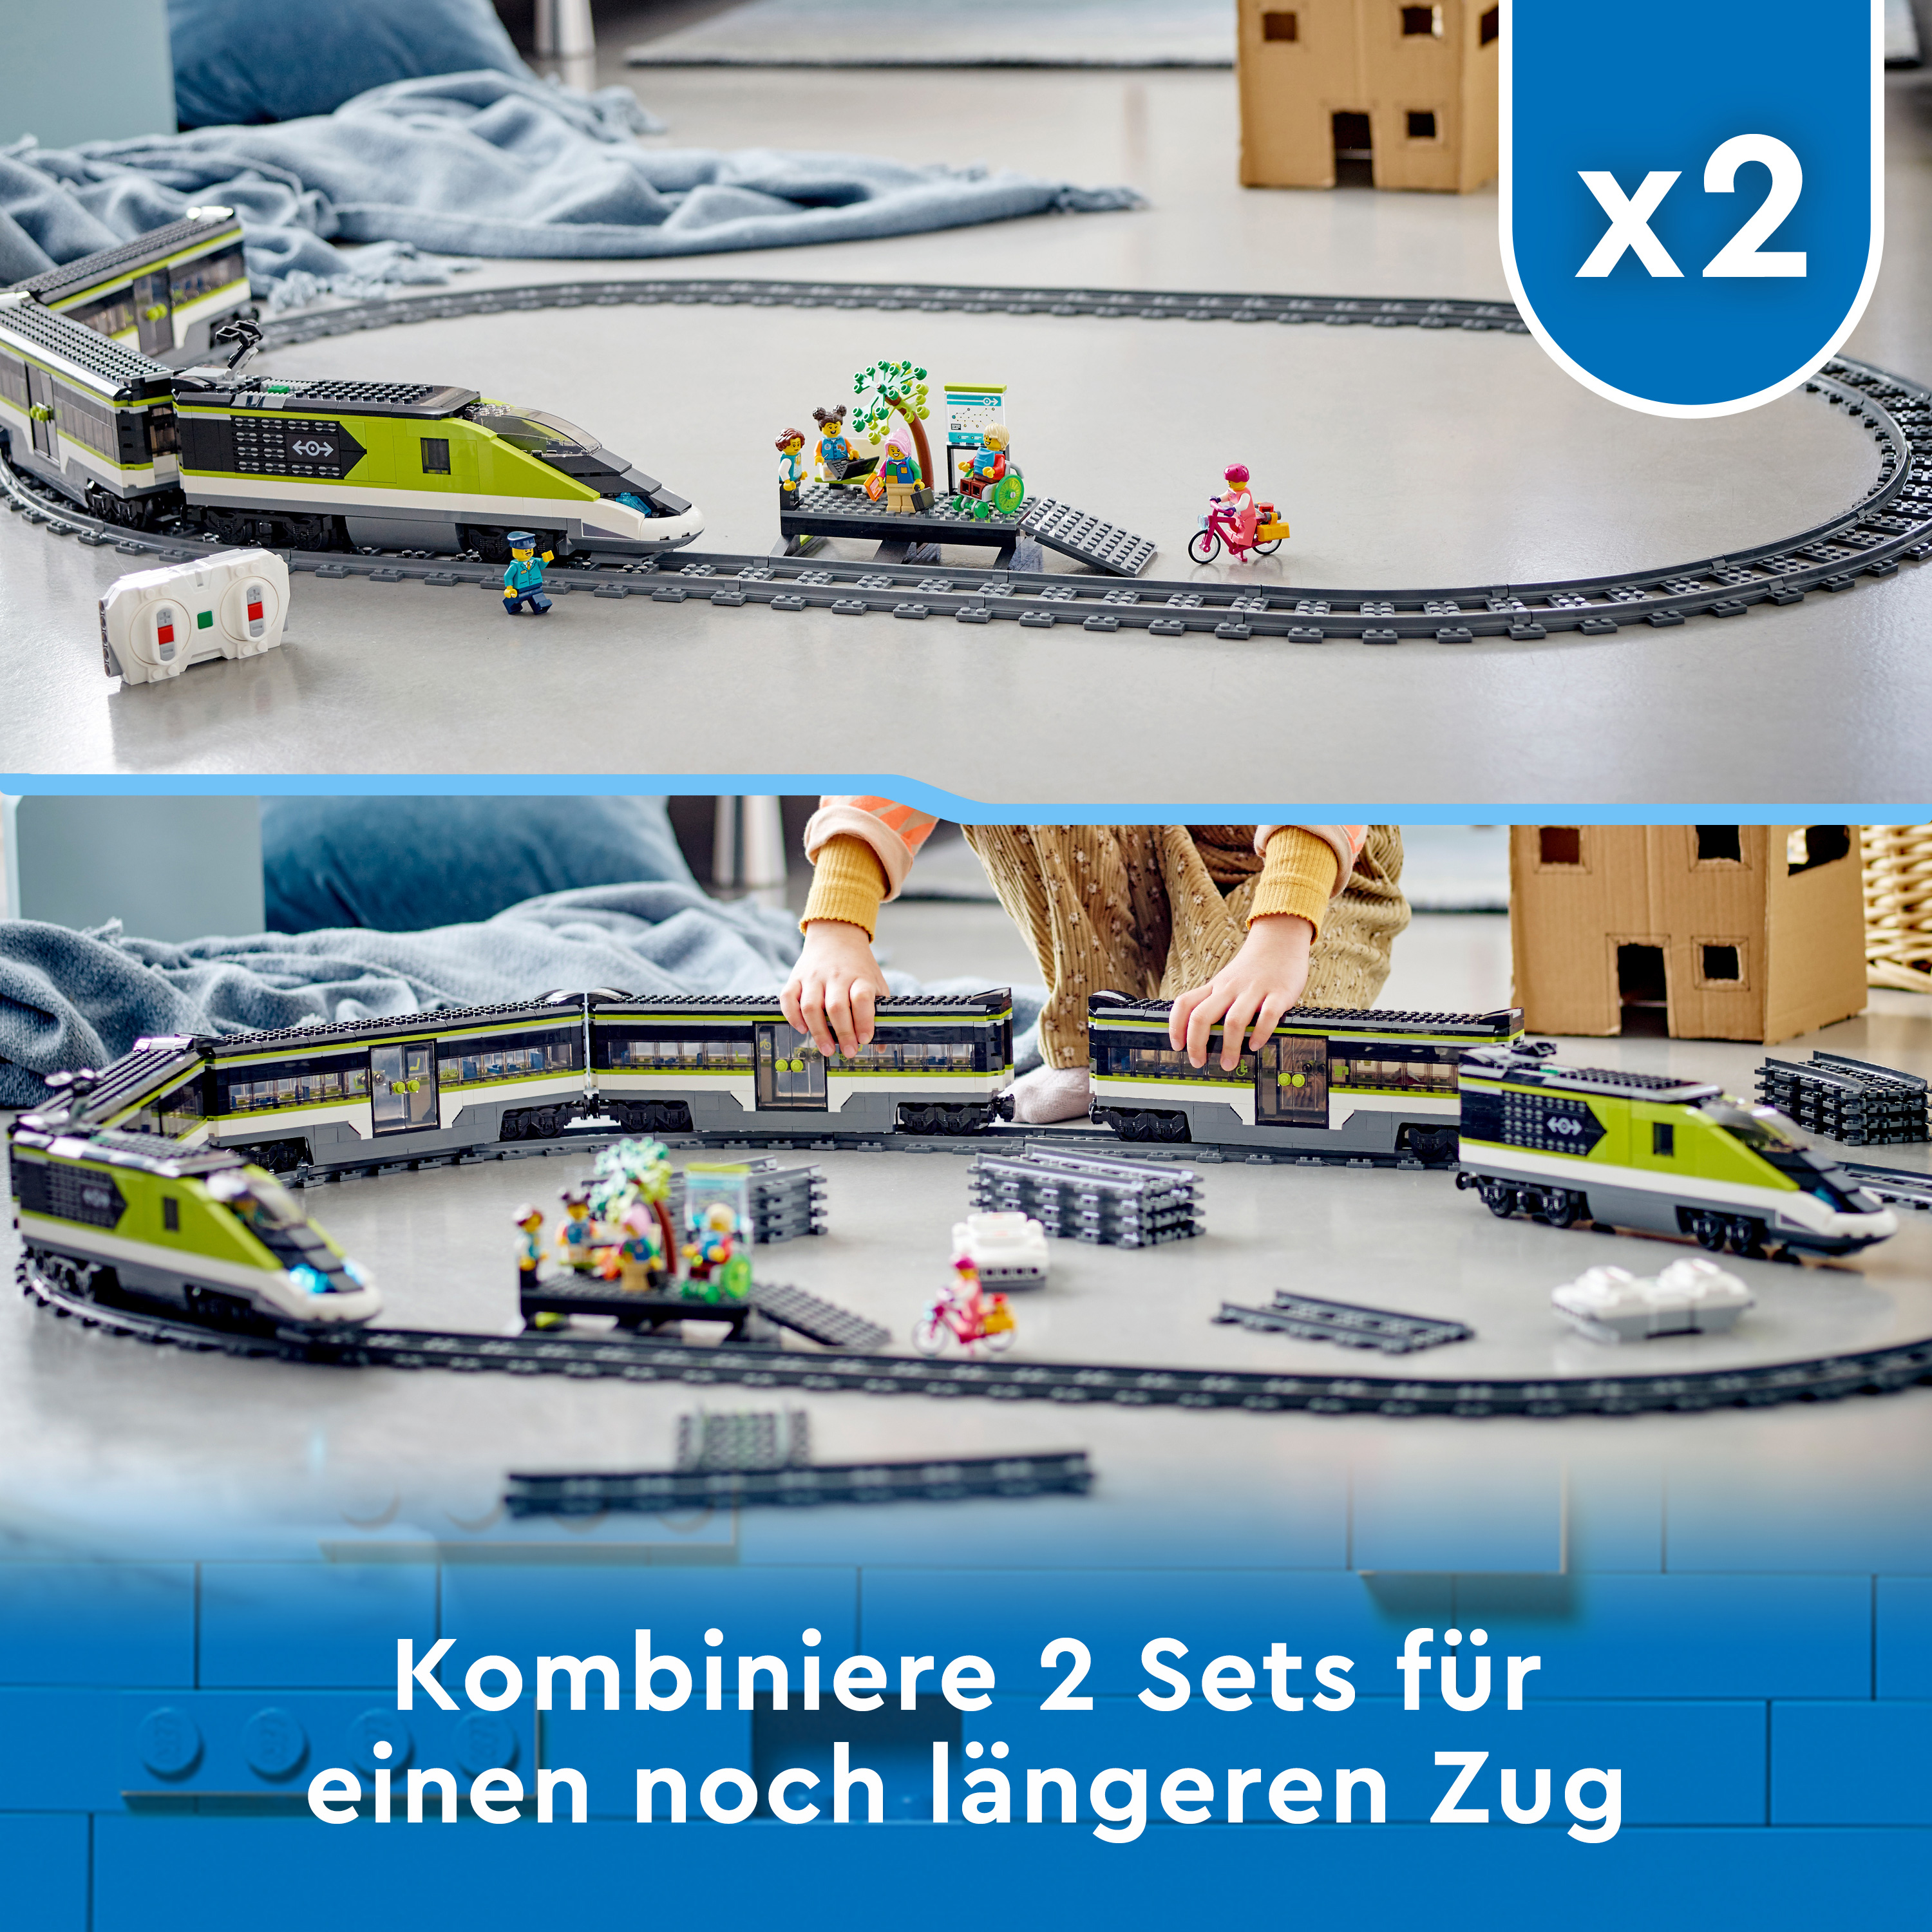 Personen-Schnellzug Mehrfarbig City Bausatz, 60337 LEGO